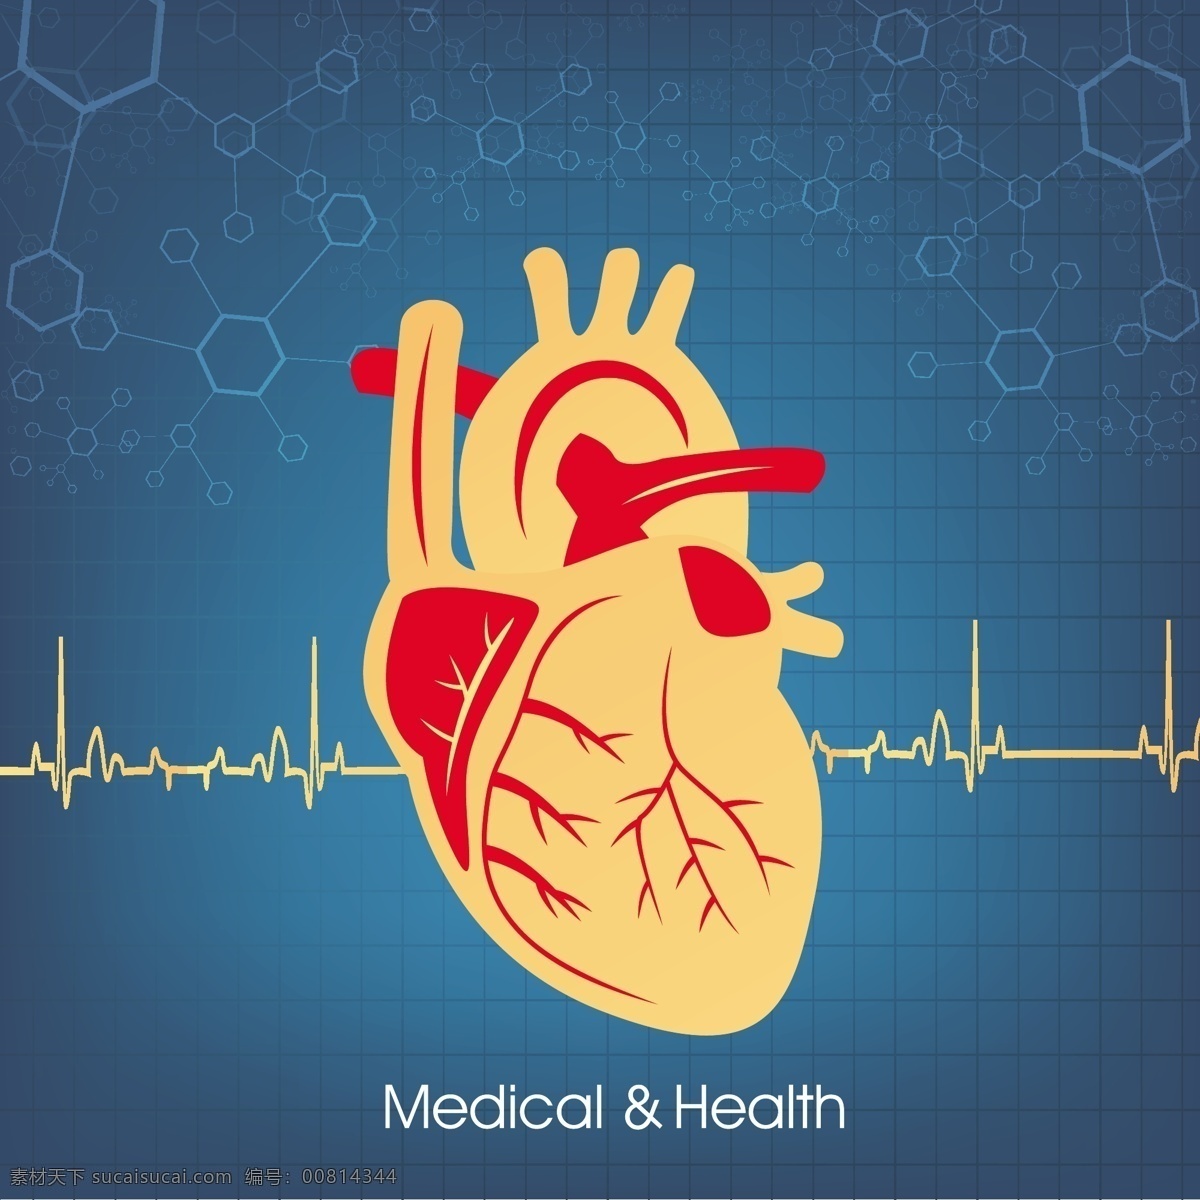 心脏背景 心脏 背景 模板下载 心电图 医学 医疗 医疗主题 医疗保健 行业标志 标志图标 矢量素材 黄色